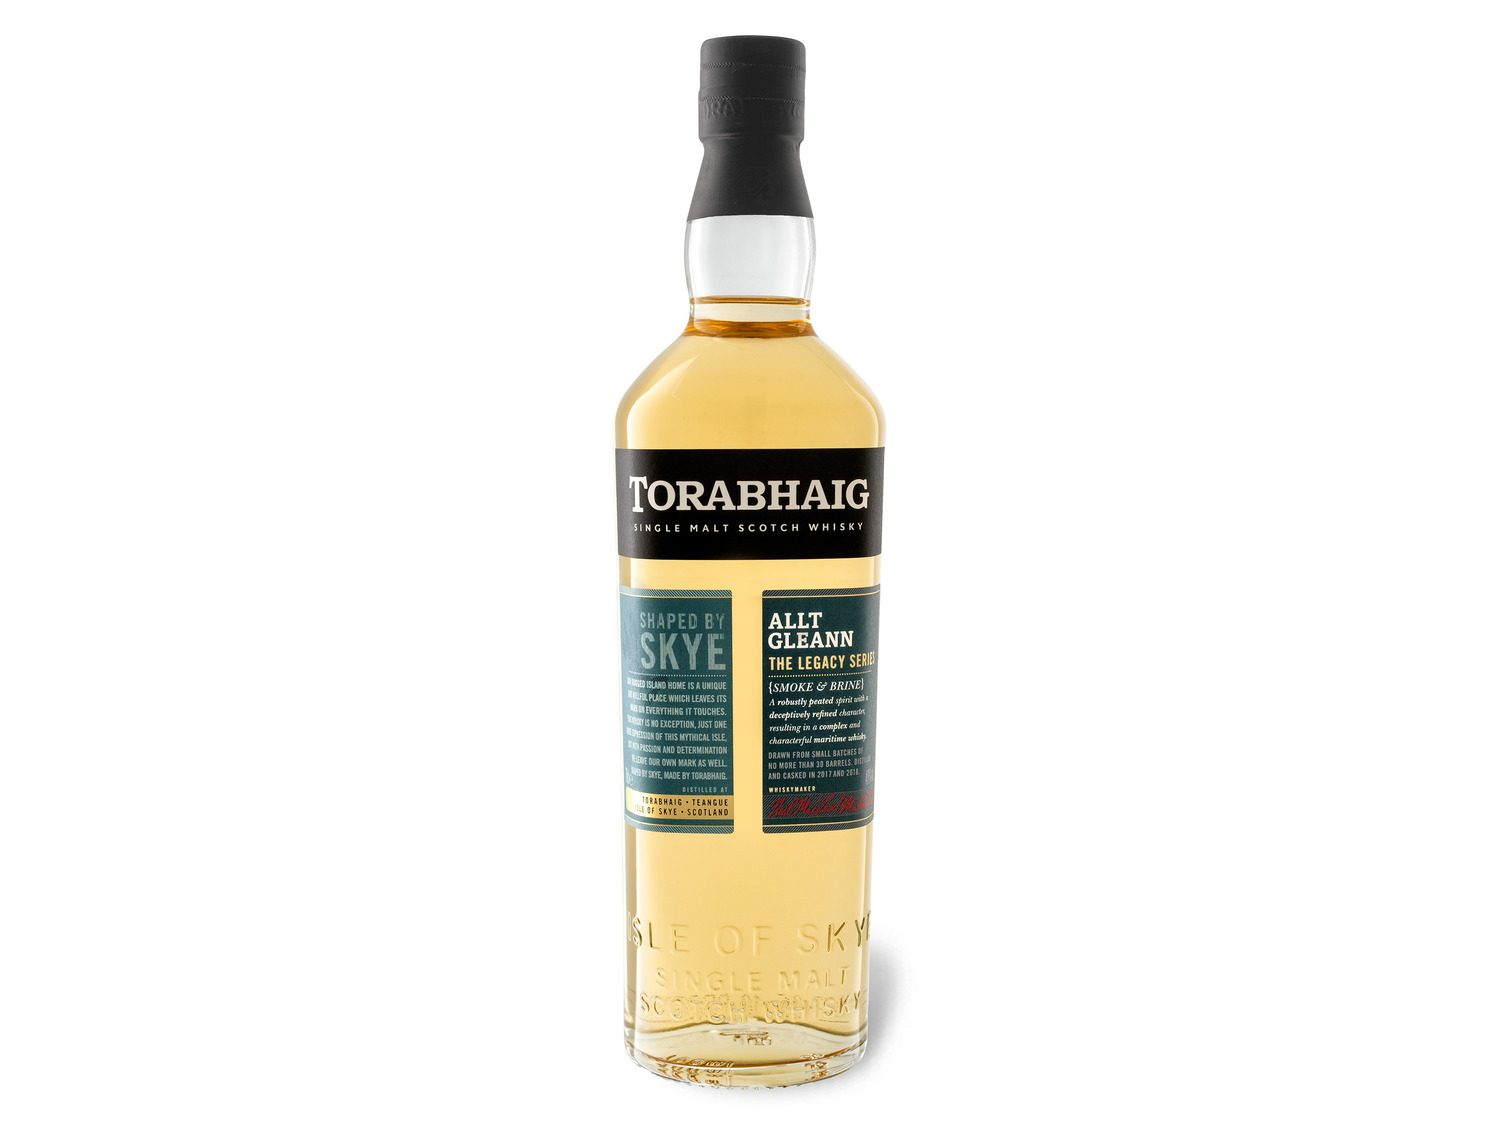 Torabhaig Single Scotch Malt The Allt Whisky Le… Gleann